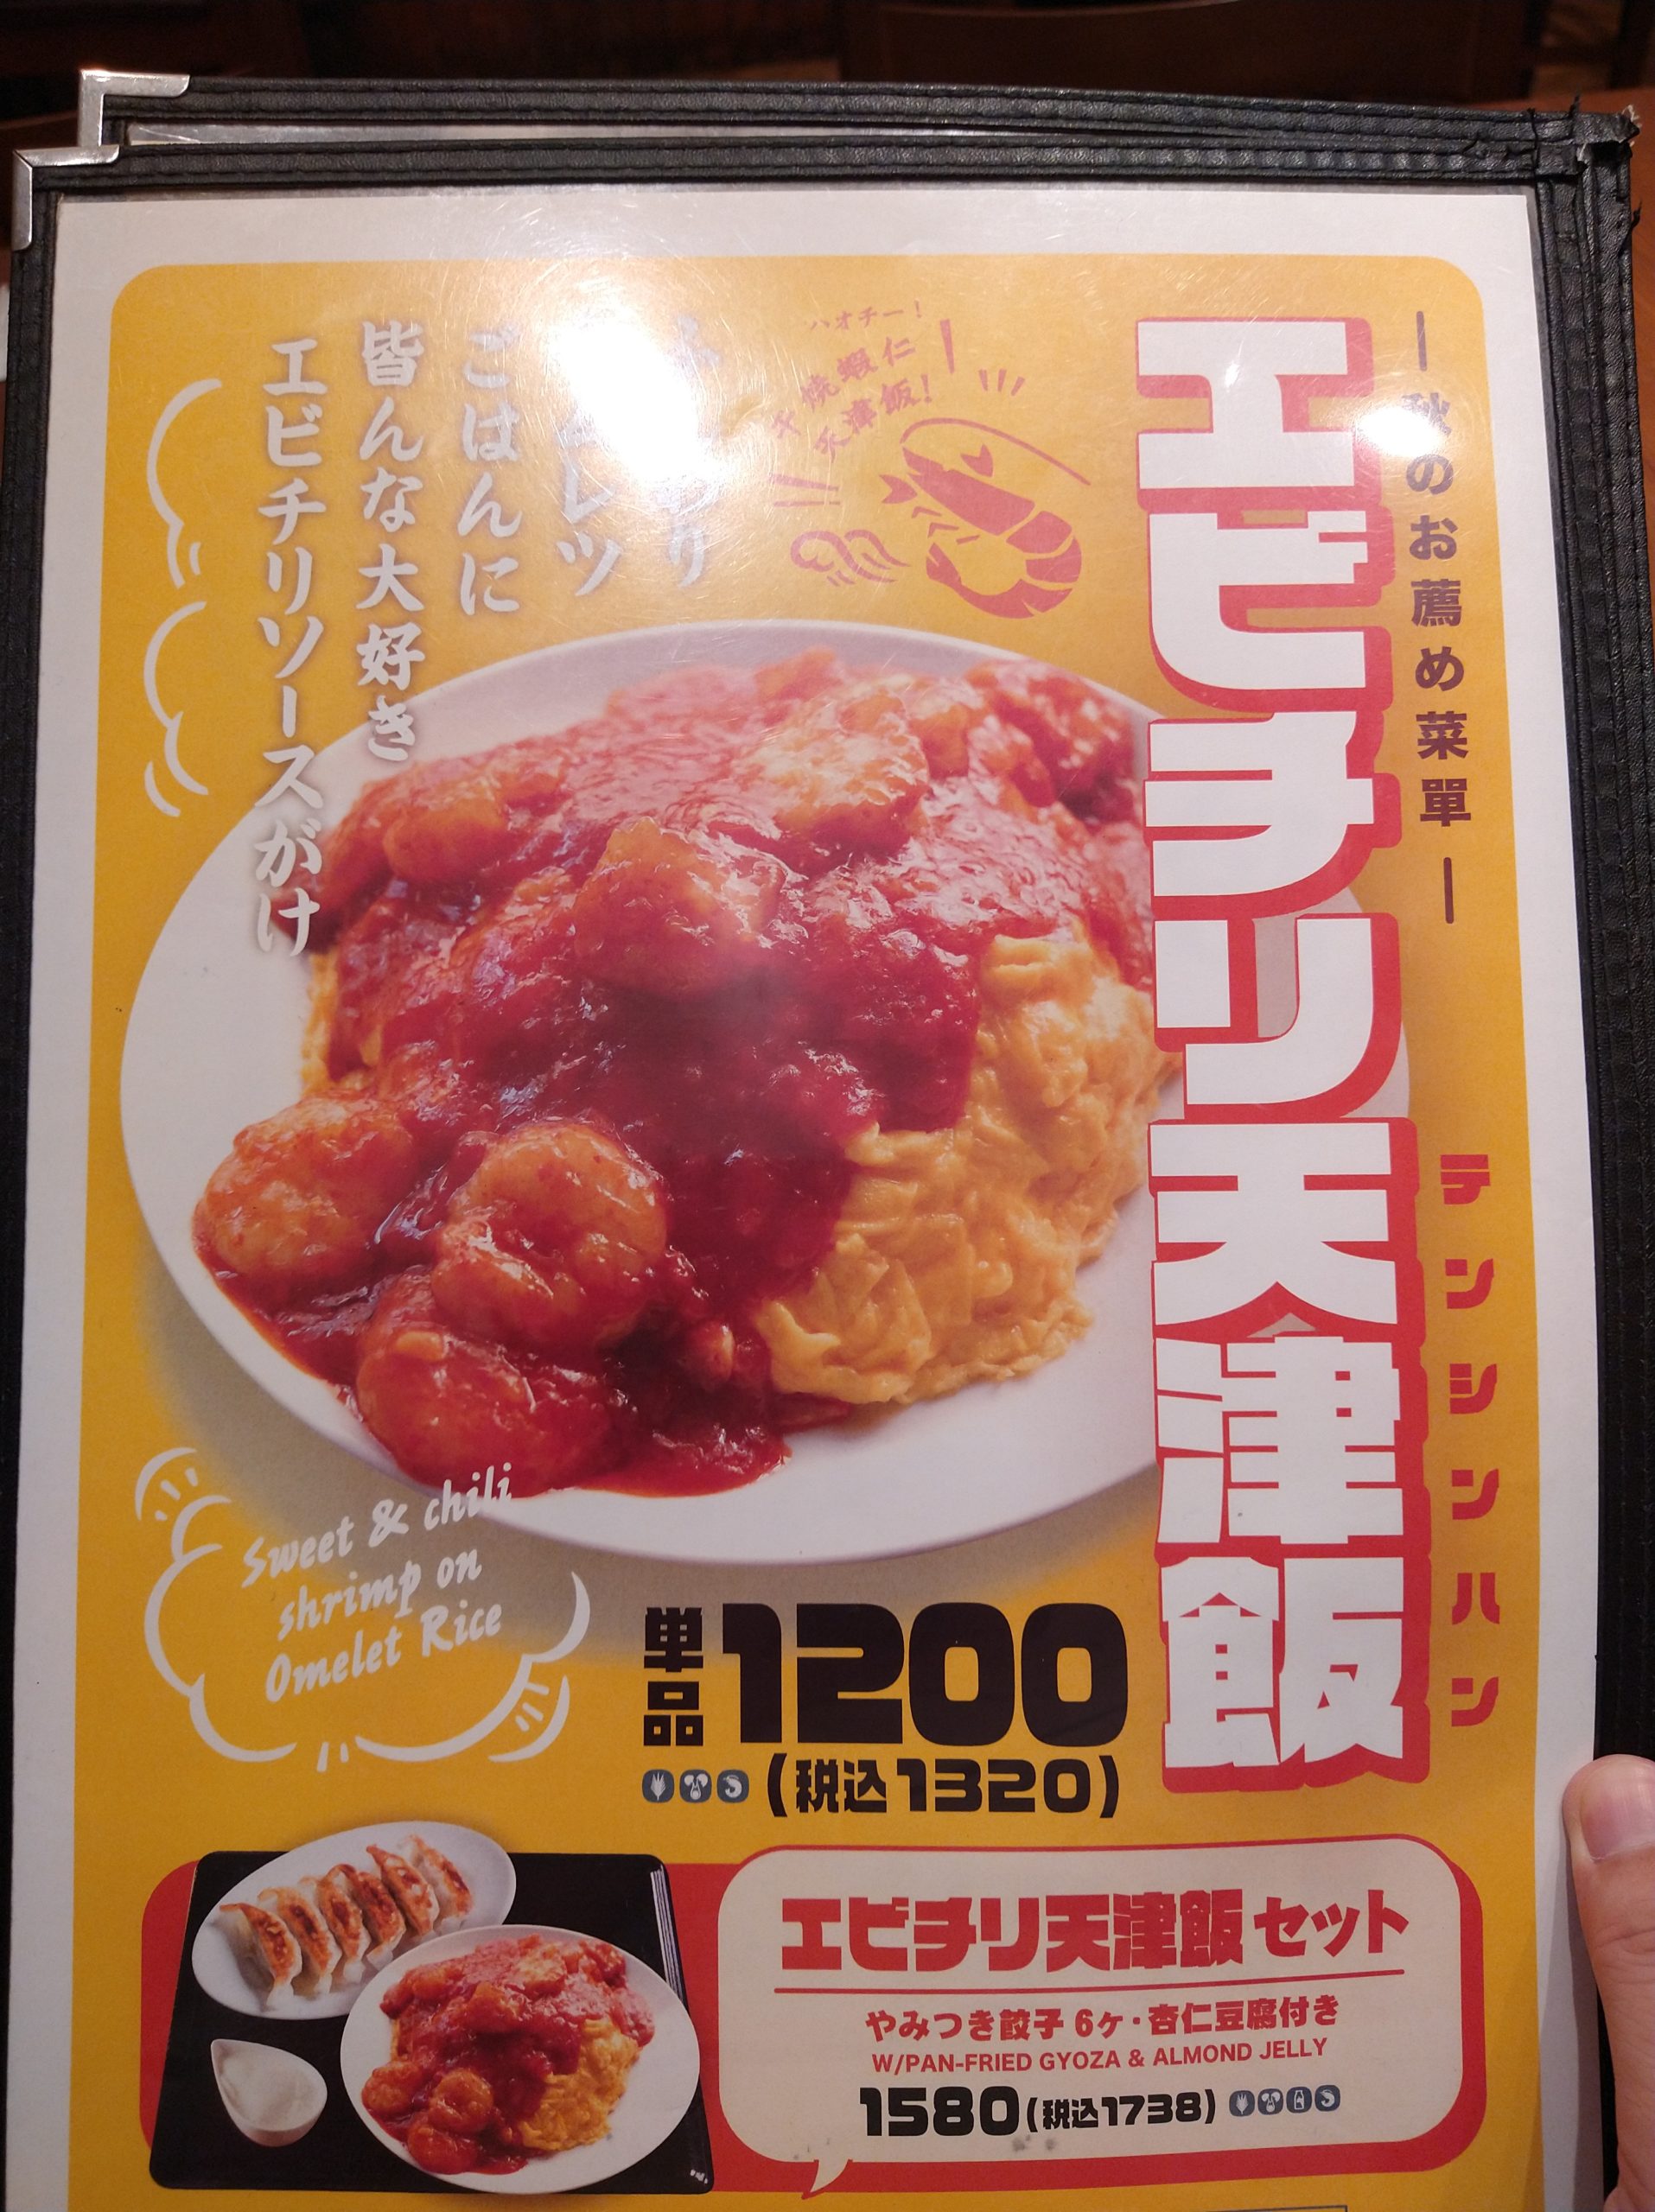 unryu-chofu-torie-menu-02